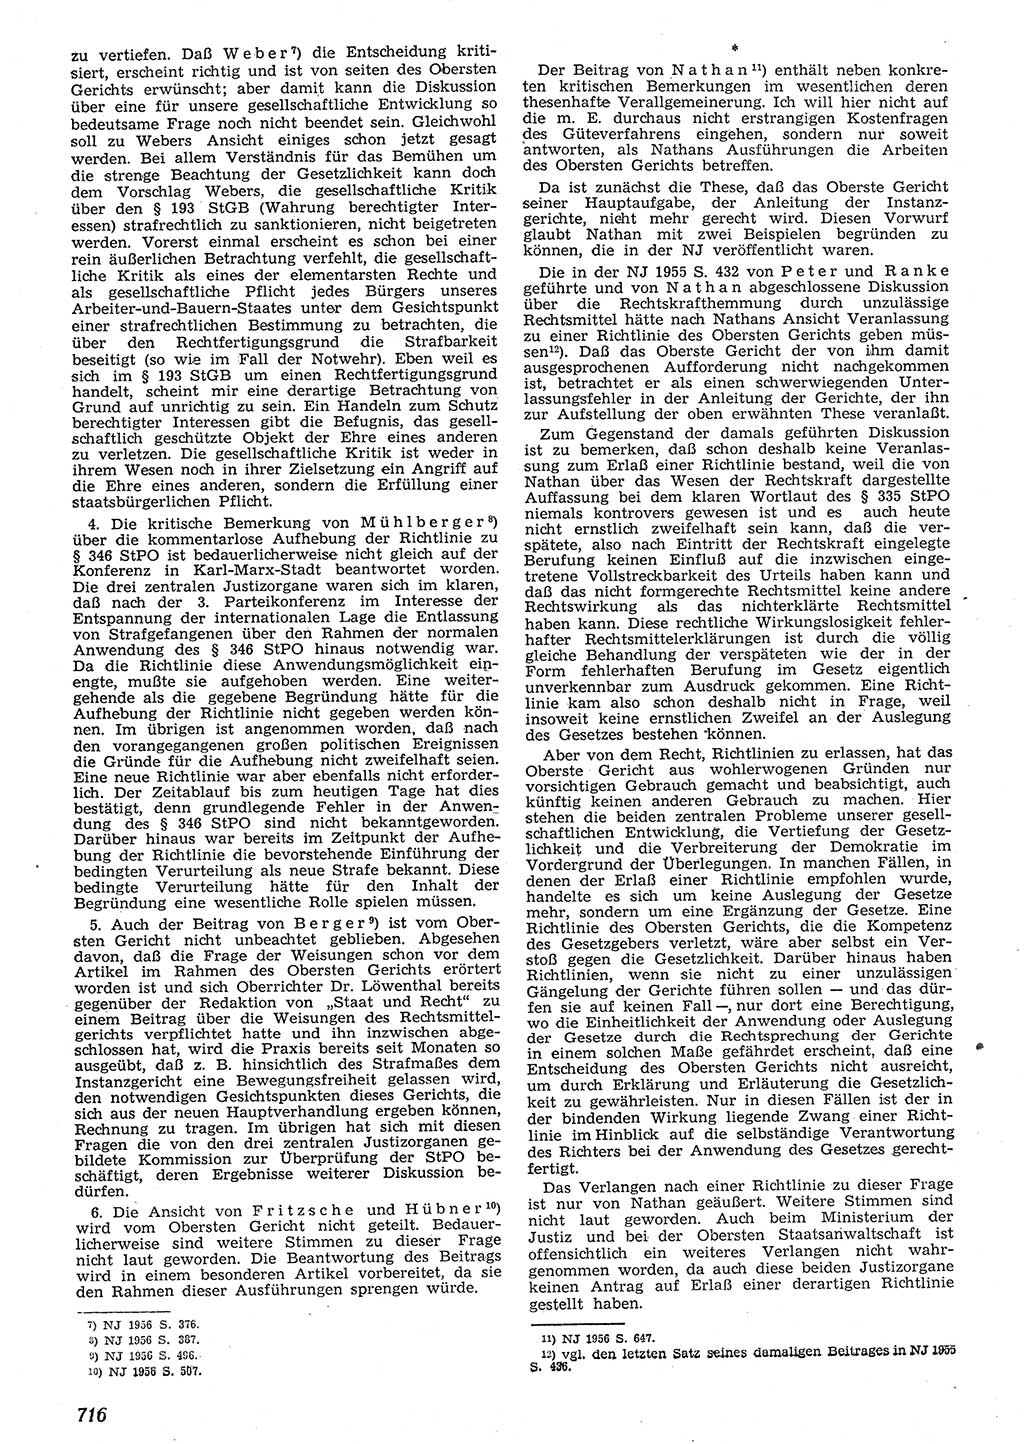 Neue Justiz (NJ), Zeitschrift für Recht und Rechtswissenschaft [Deutsche Demokratische Republik (DDR)], 10. Jahrgang 1956, Seite 716 (NJ DDR 1956, S. 716)